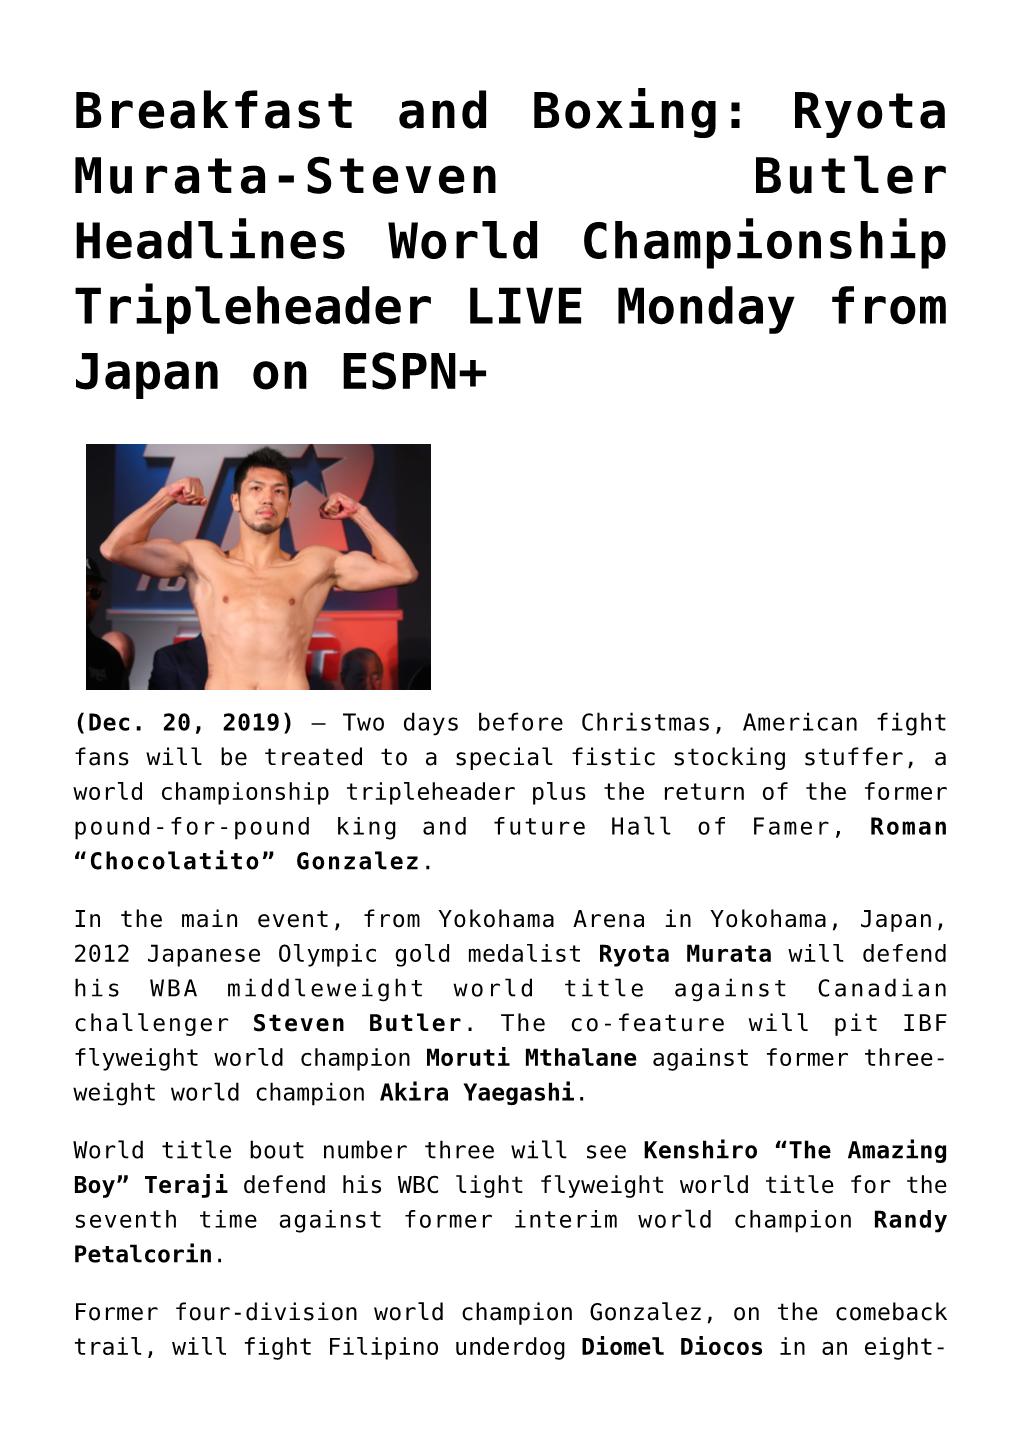 Breakfast and Boxing: Ryota Murata-Steven Butler Headlines World Championship Tripleheader LIVE Monday from Japan on ESPN+